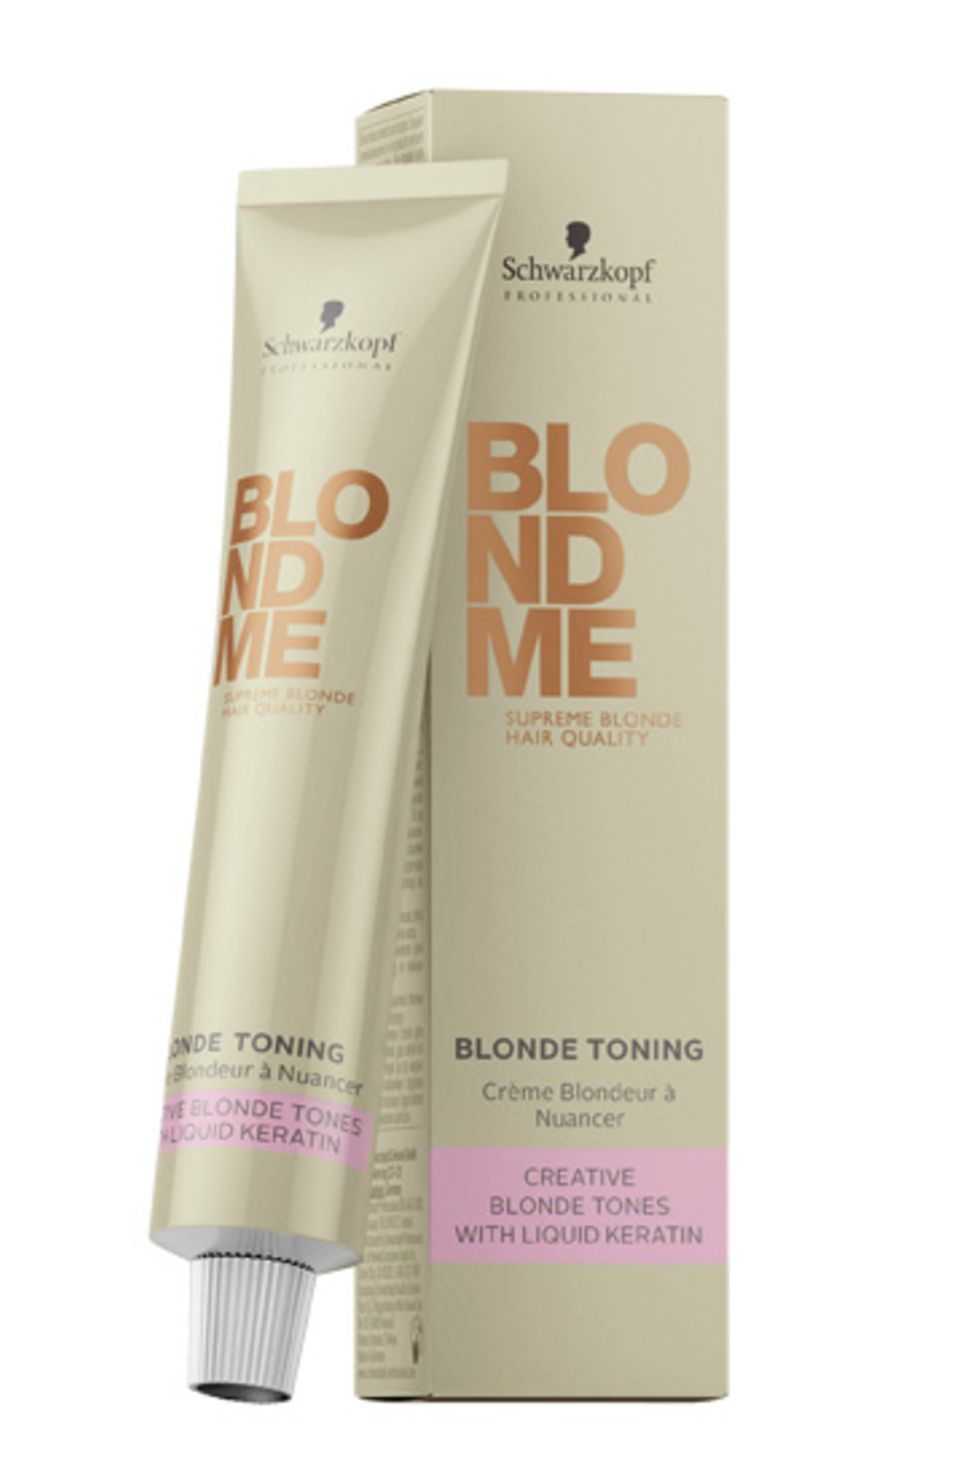 

BLONDME Blonde Toning